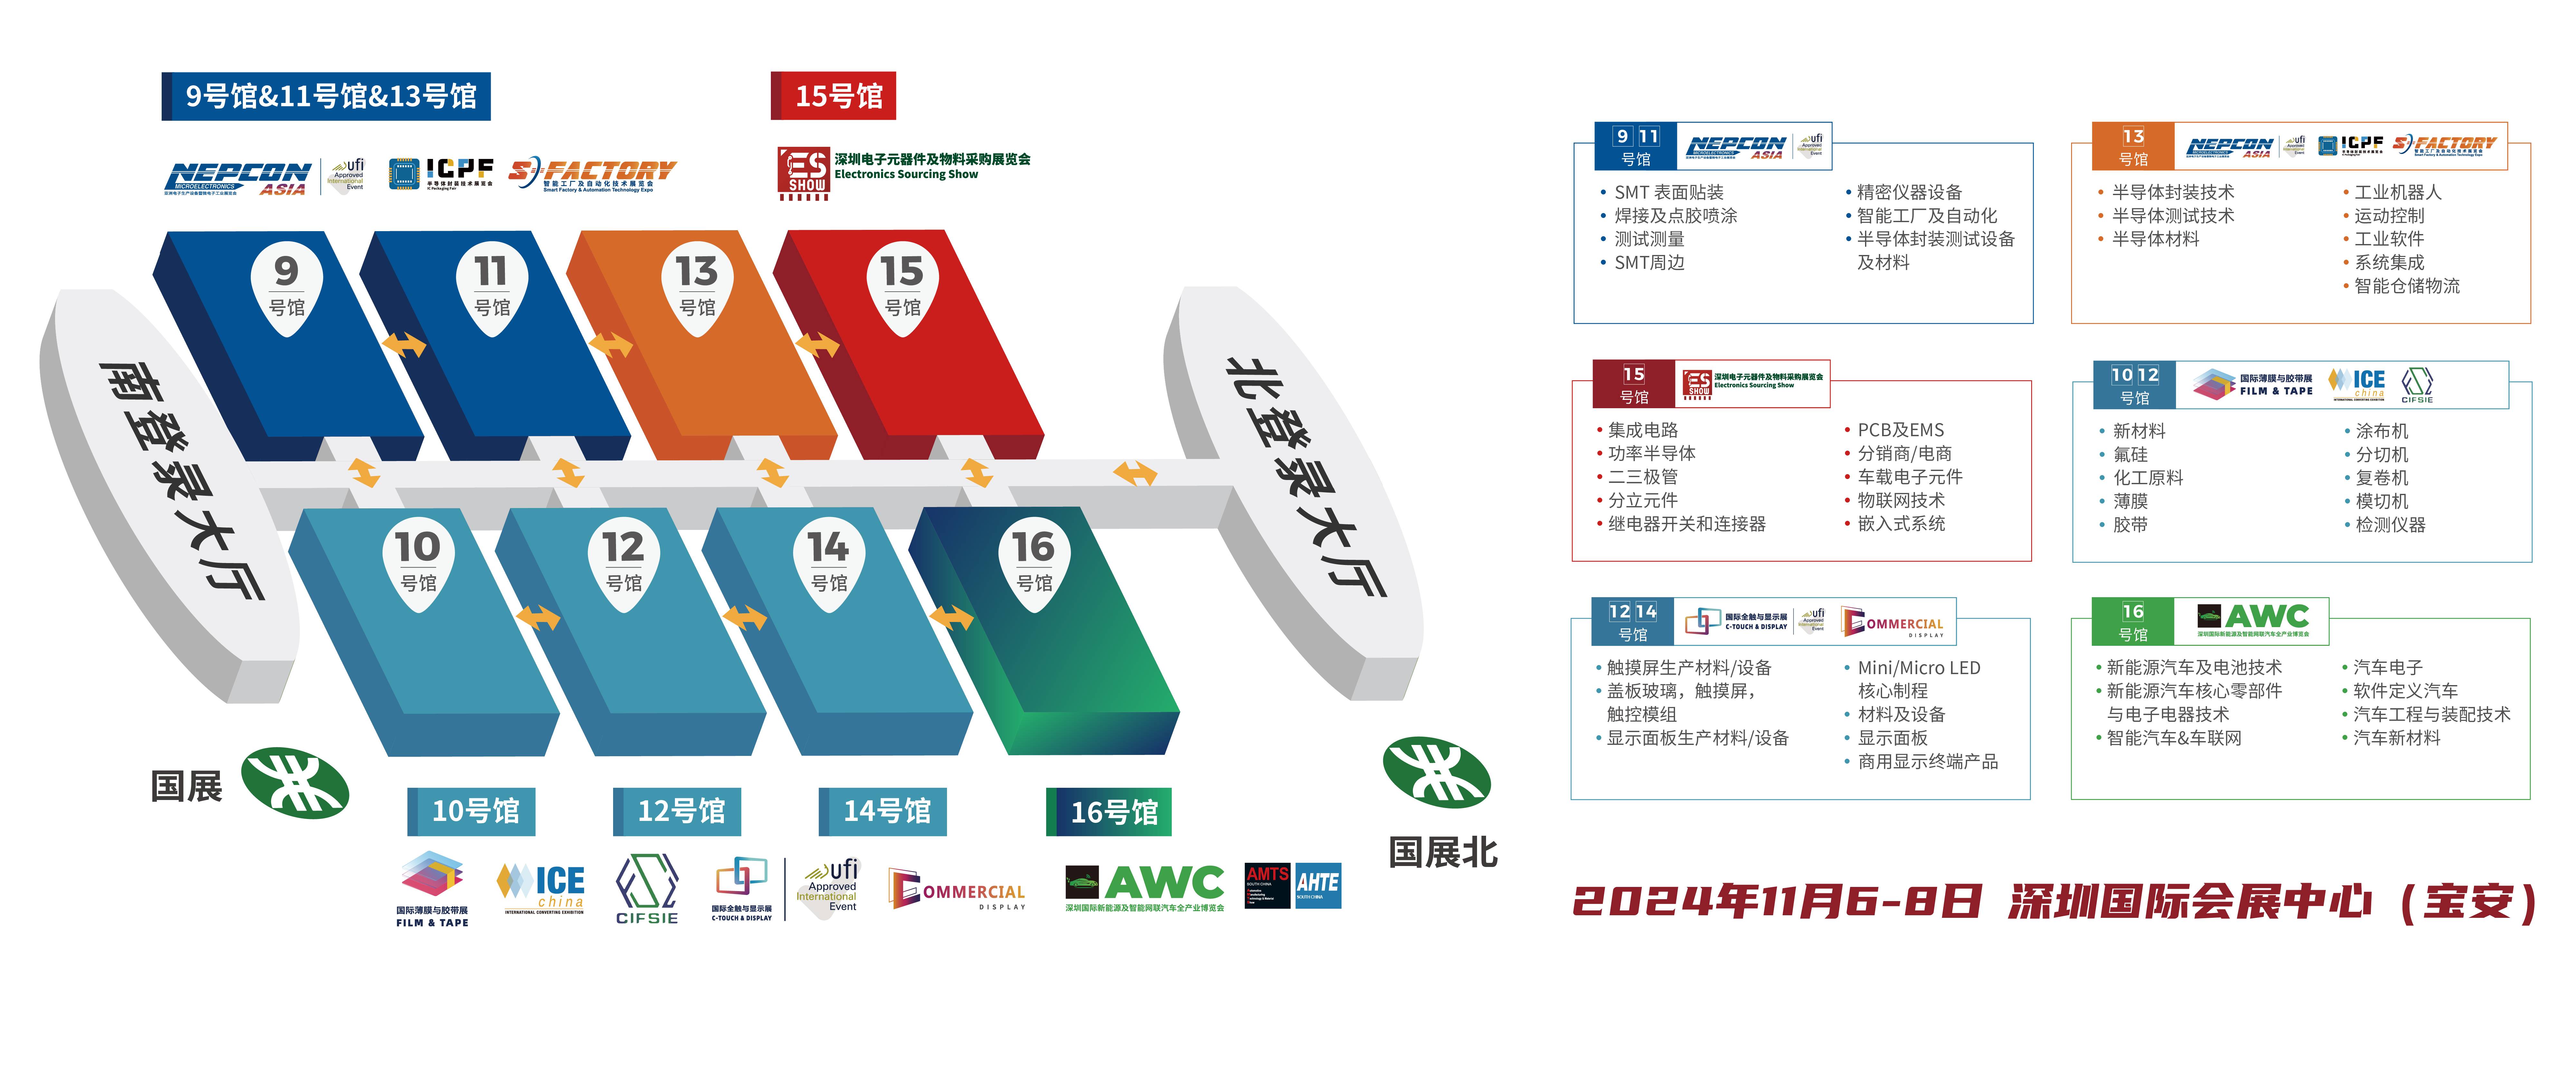 LVDS 华南电子展 电感 深圳电子展 中国电子展